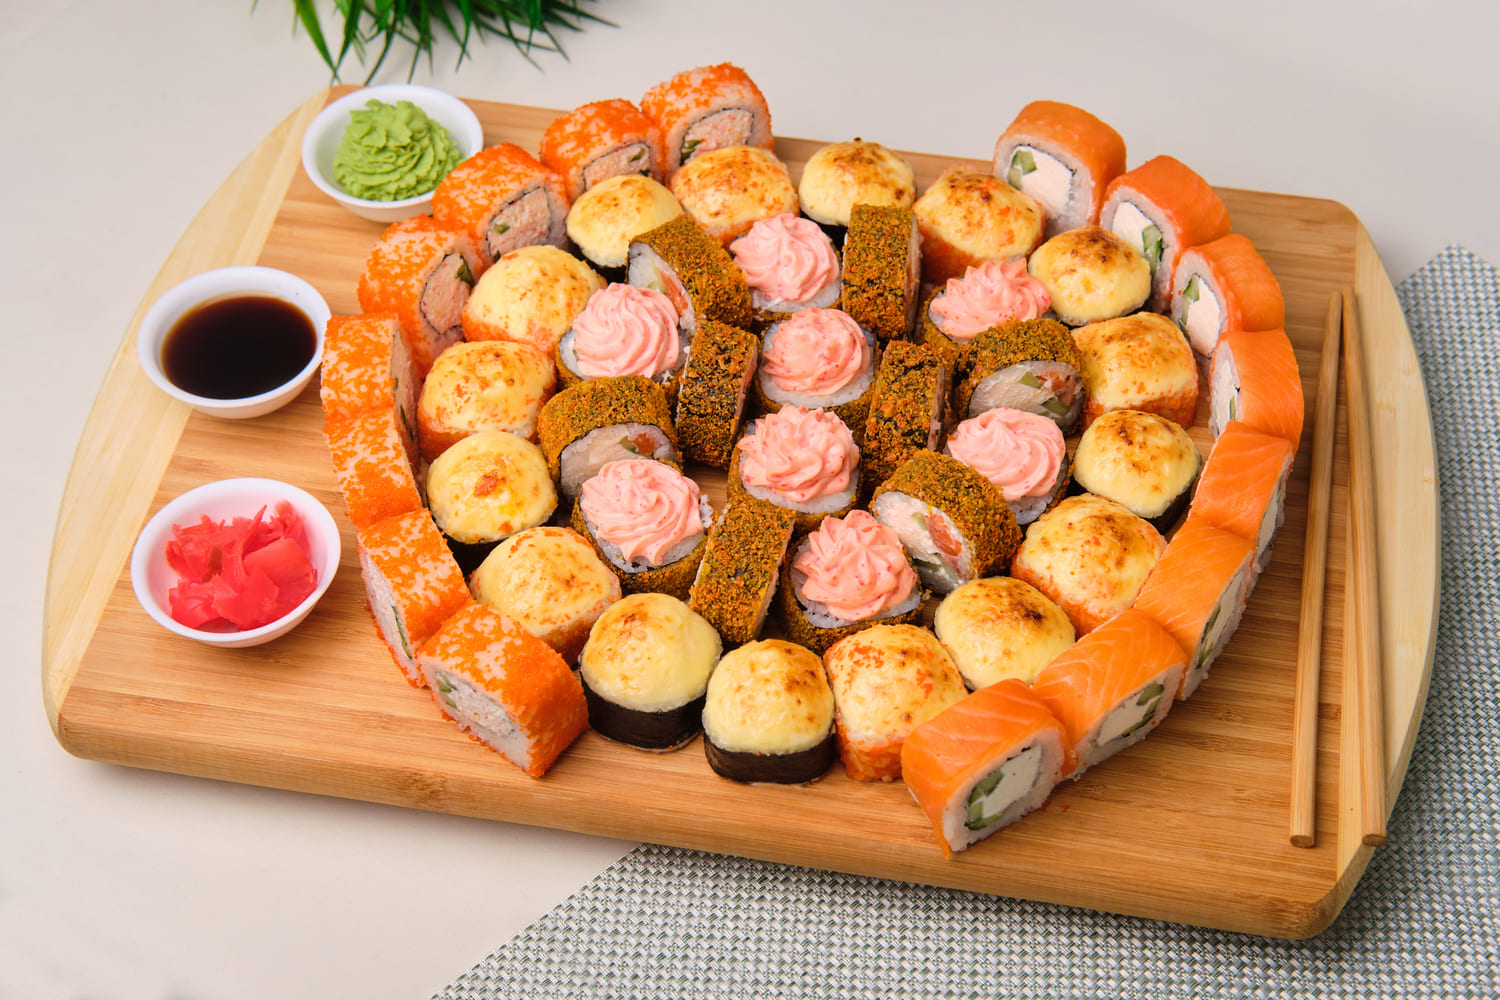 Заказать суши в дзержинском московской фото 83